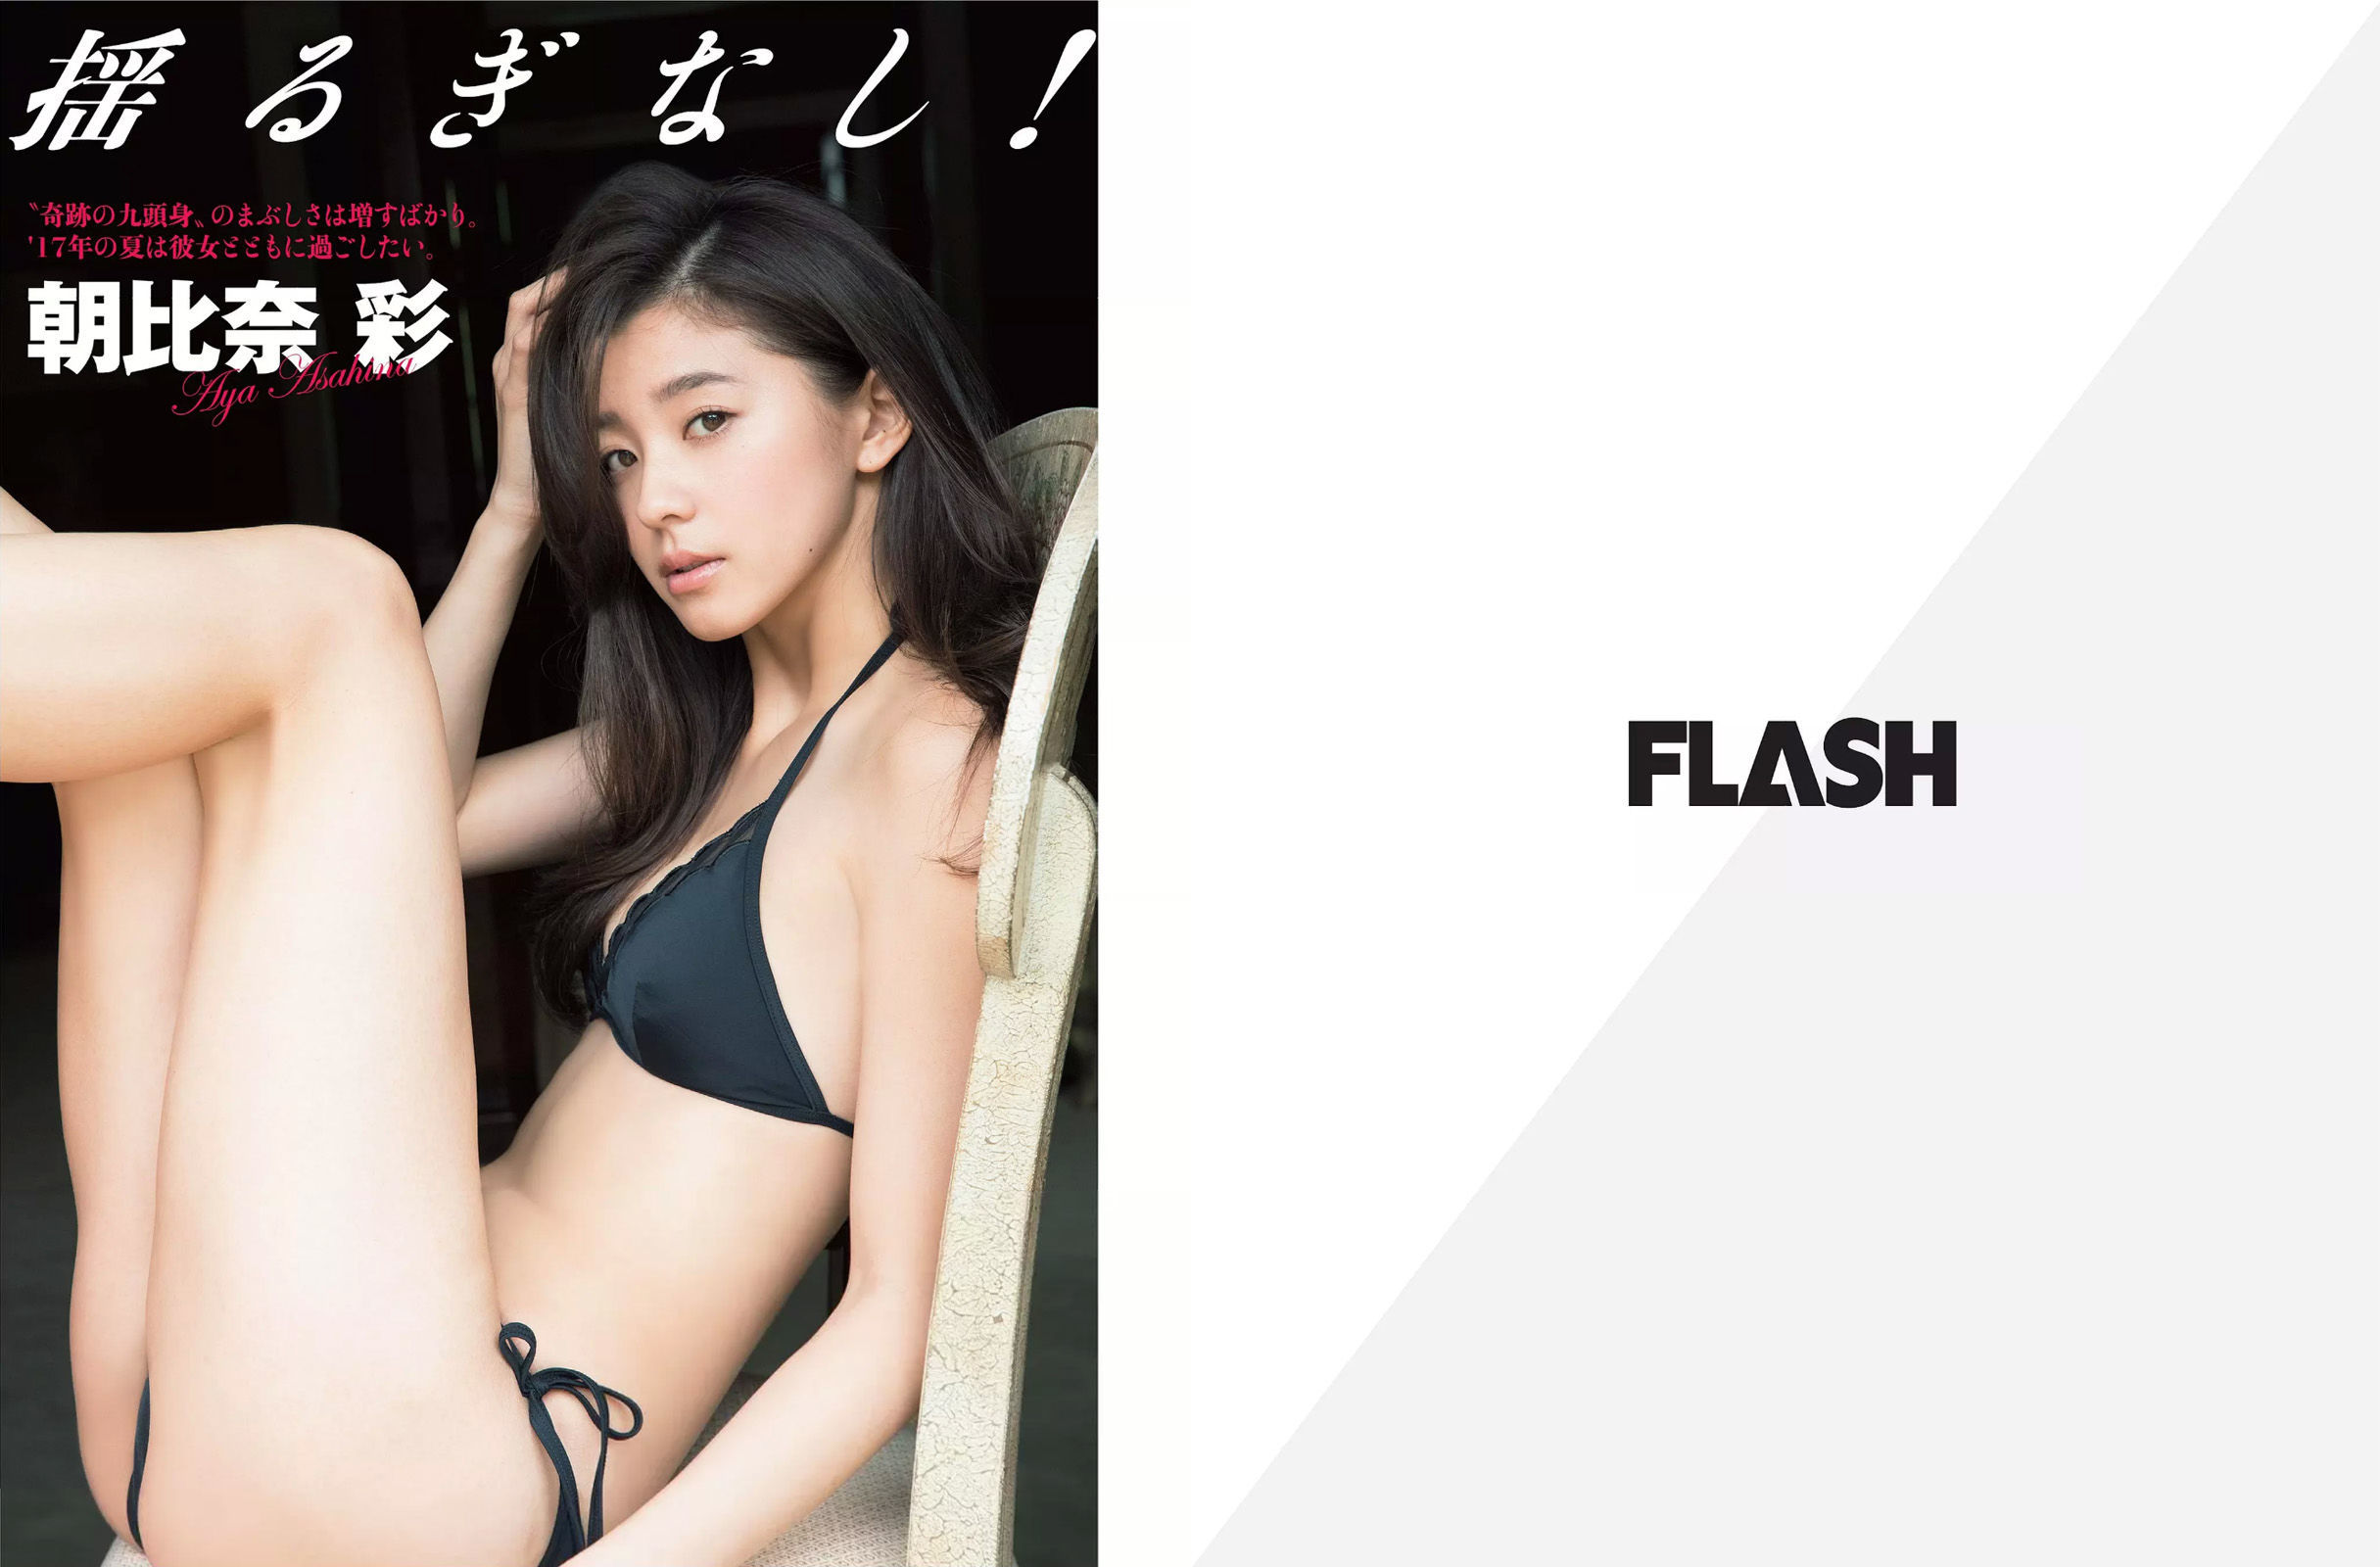 [FLASH]杂志:朝比奈彩高品质私房写真在线浏览(18P)